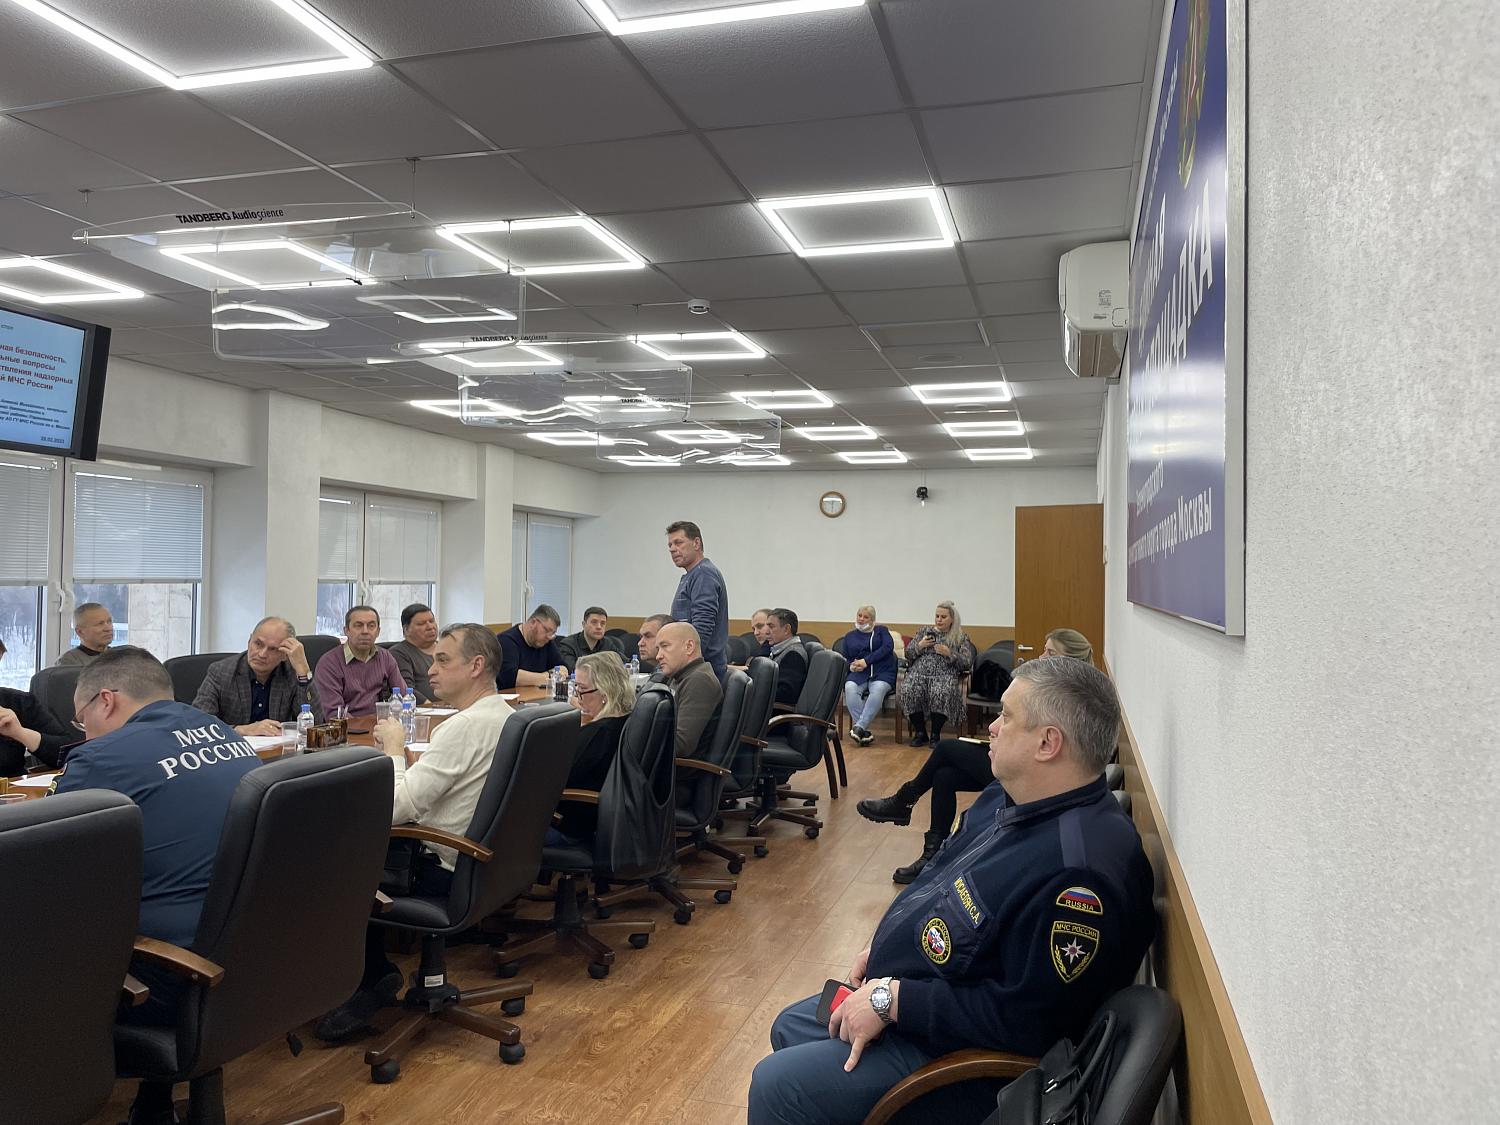 Сотрудники МЧС рассказали предпринимателям Зеленограда о правилах организации пожарной безопасности 